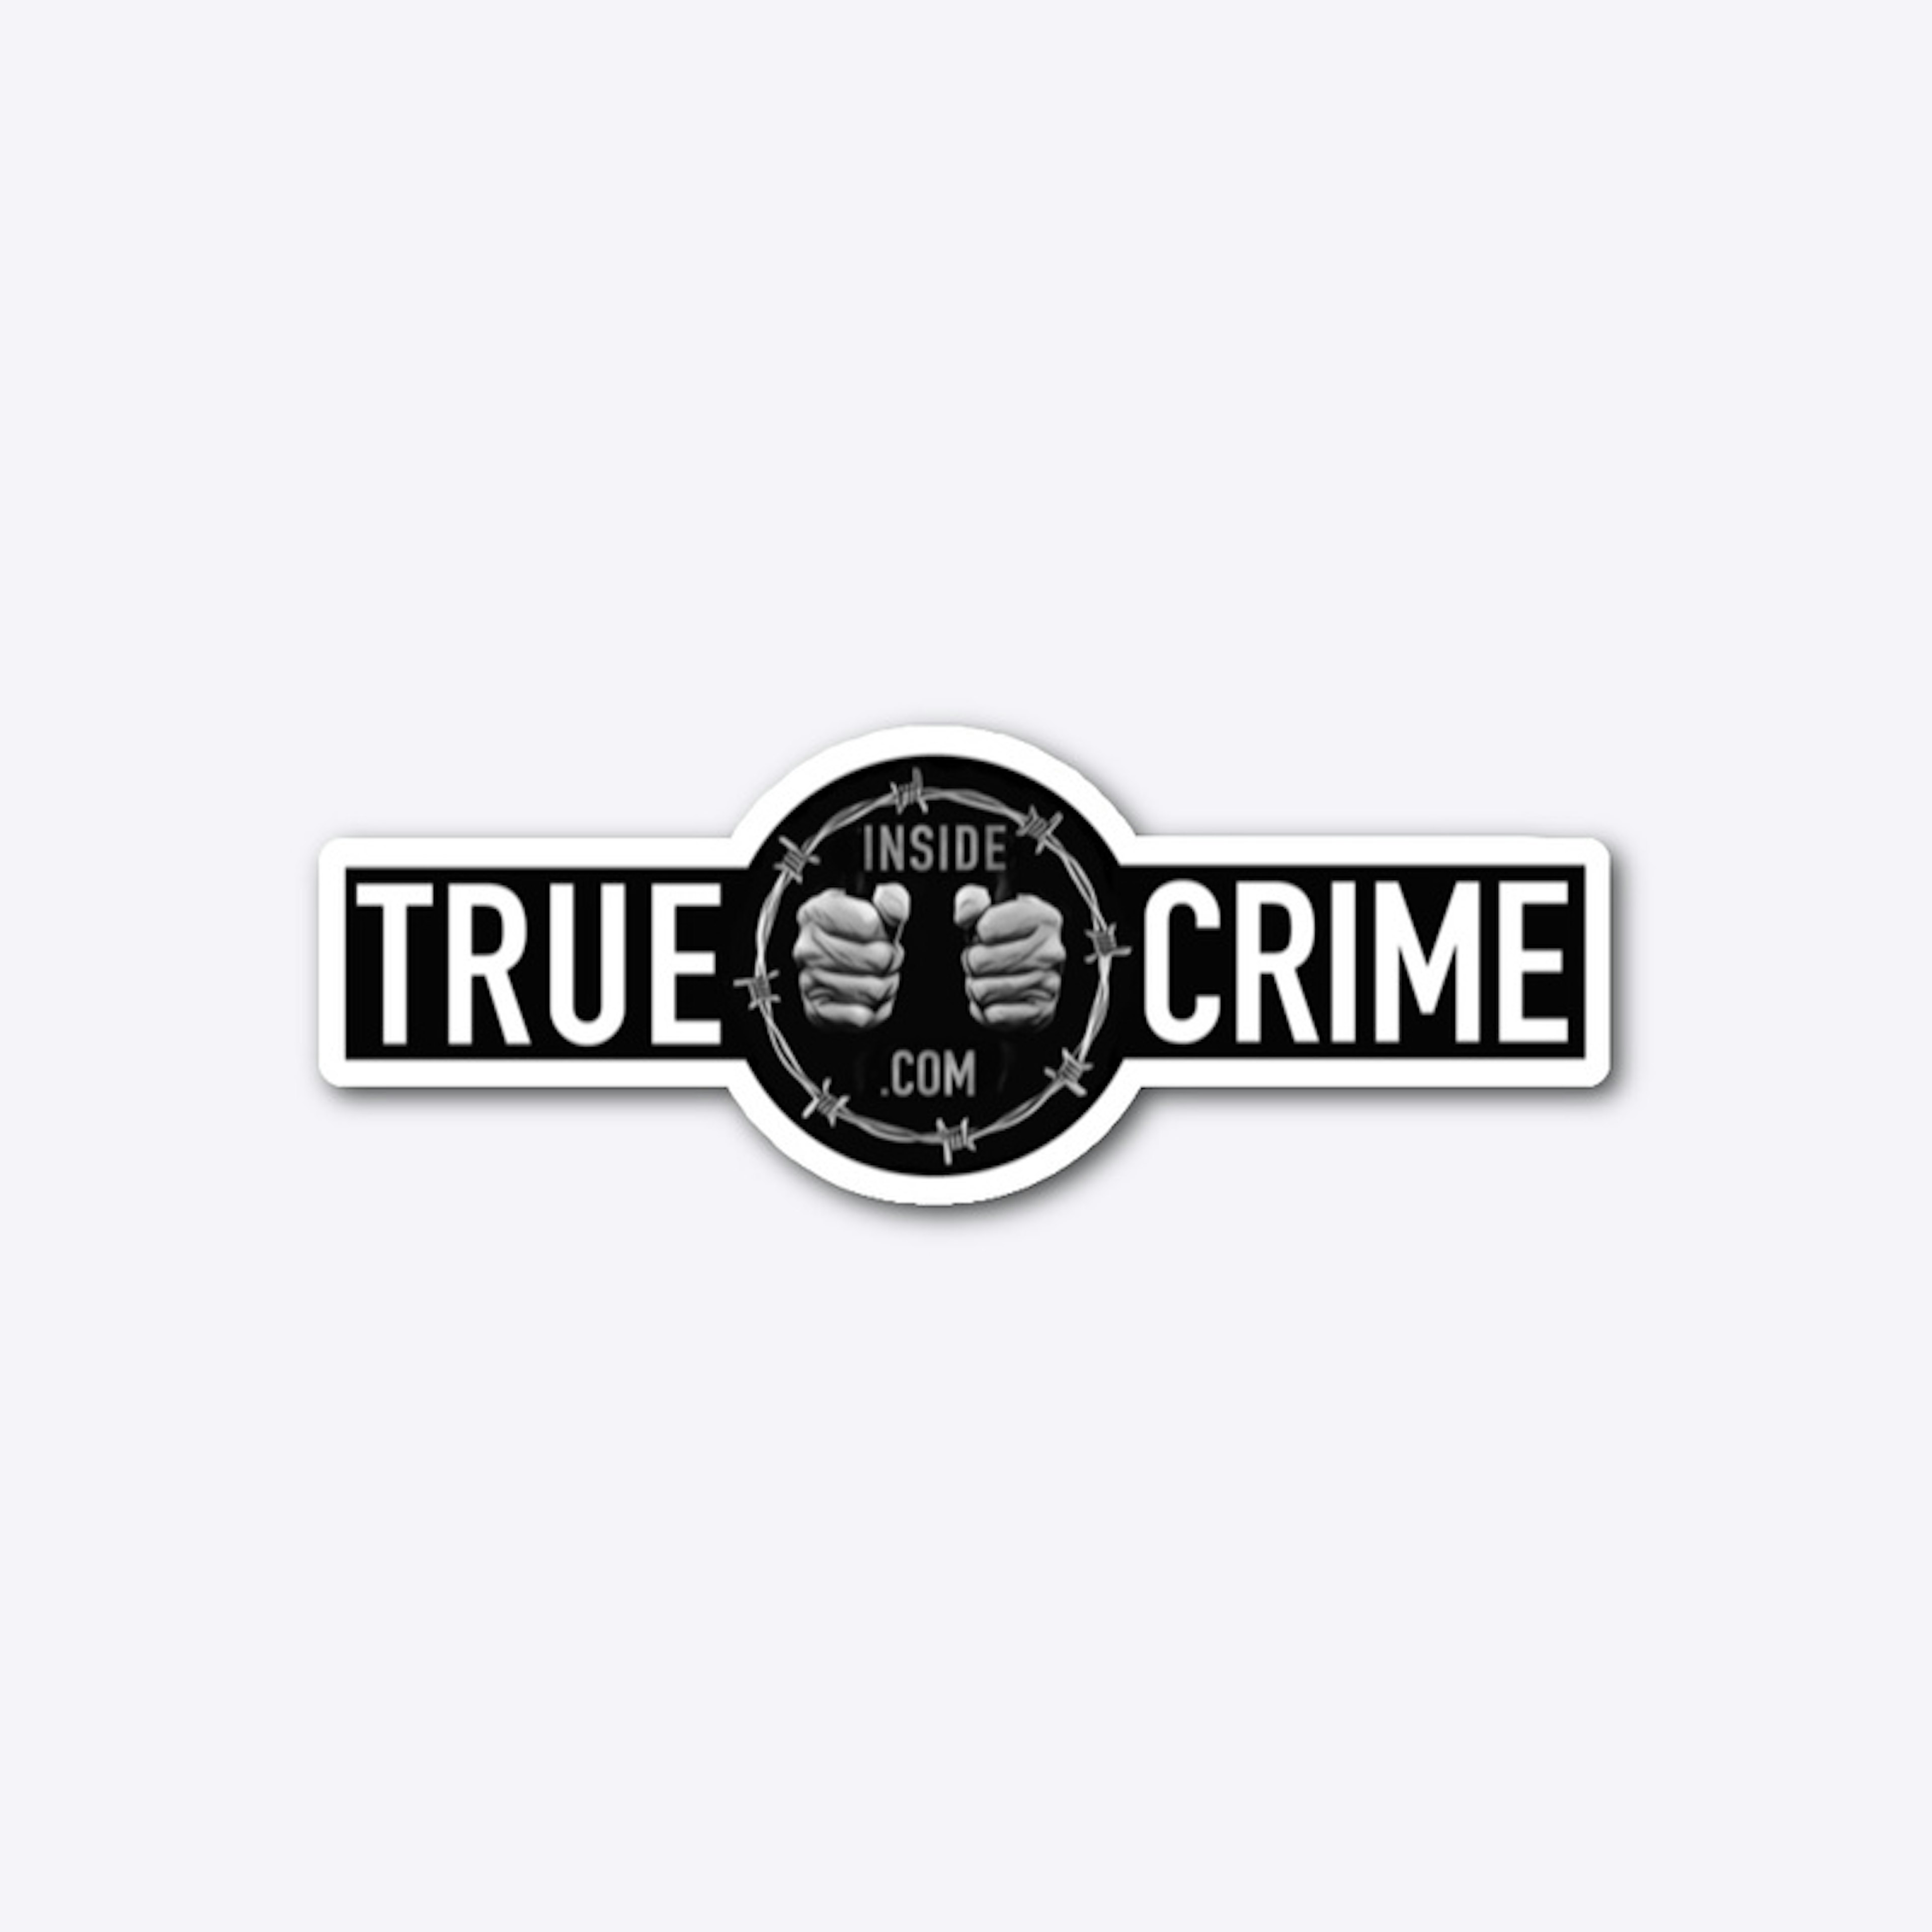 Inside true crime logo sticker